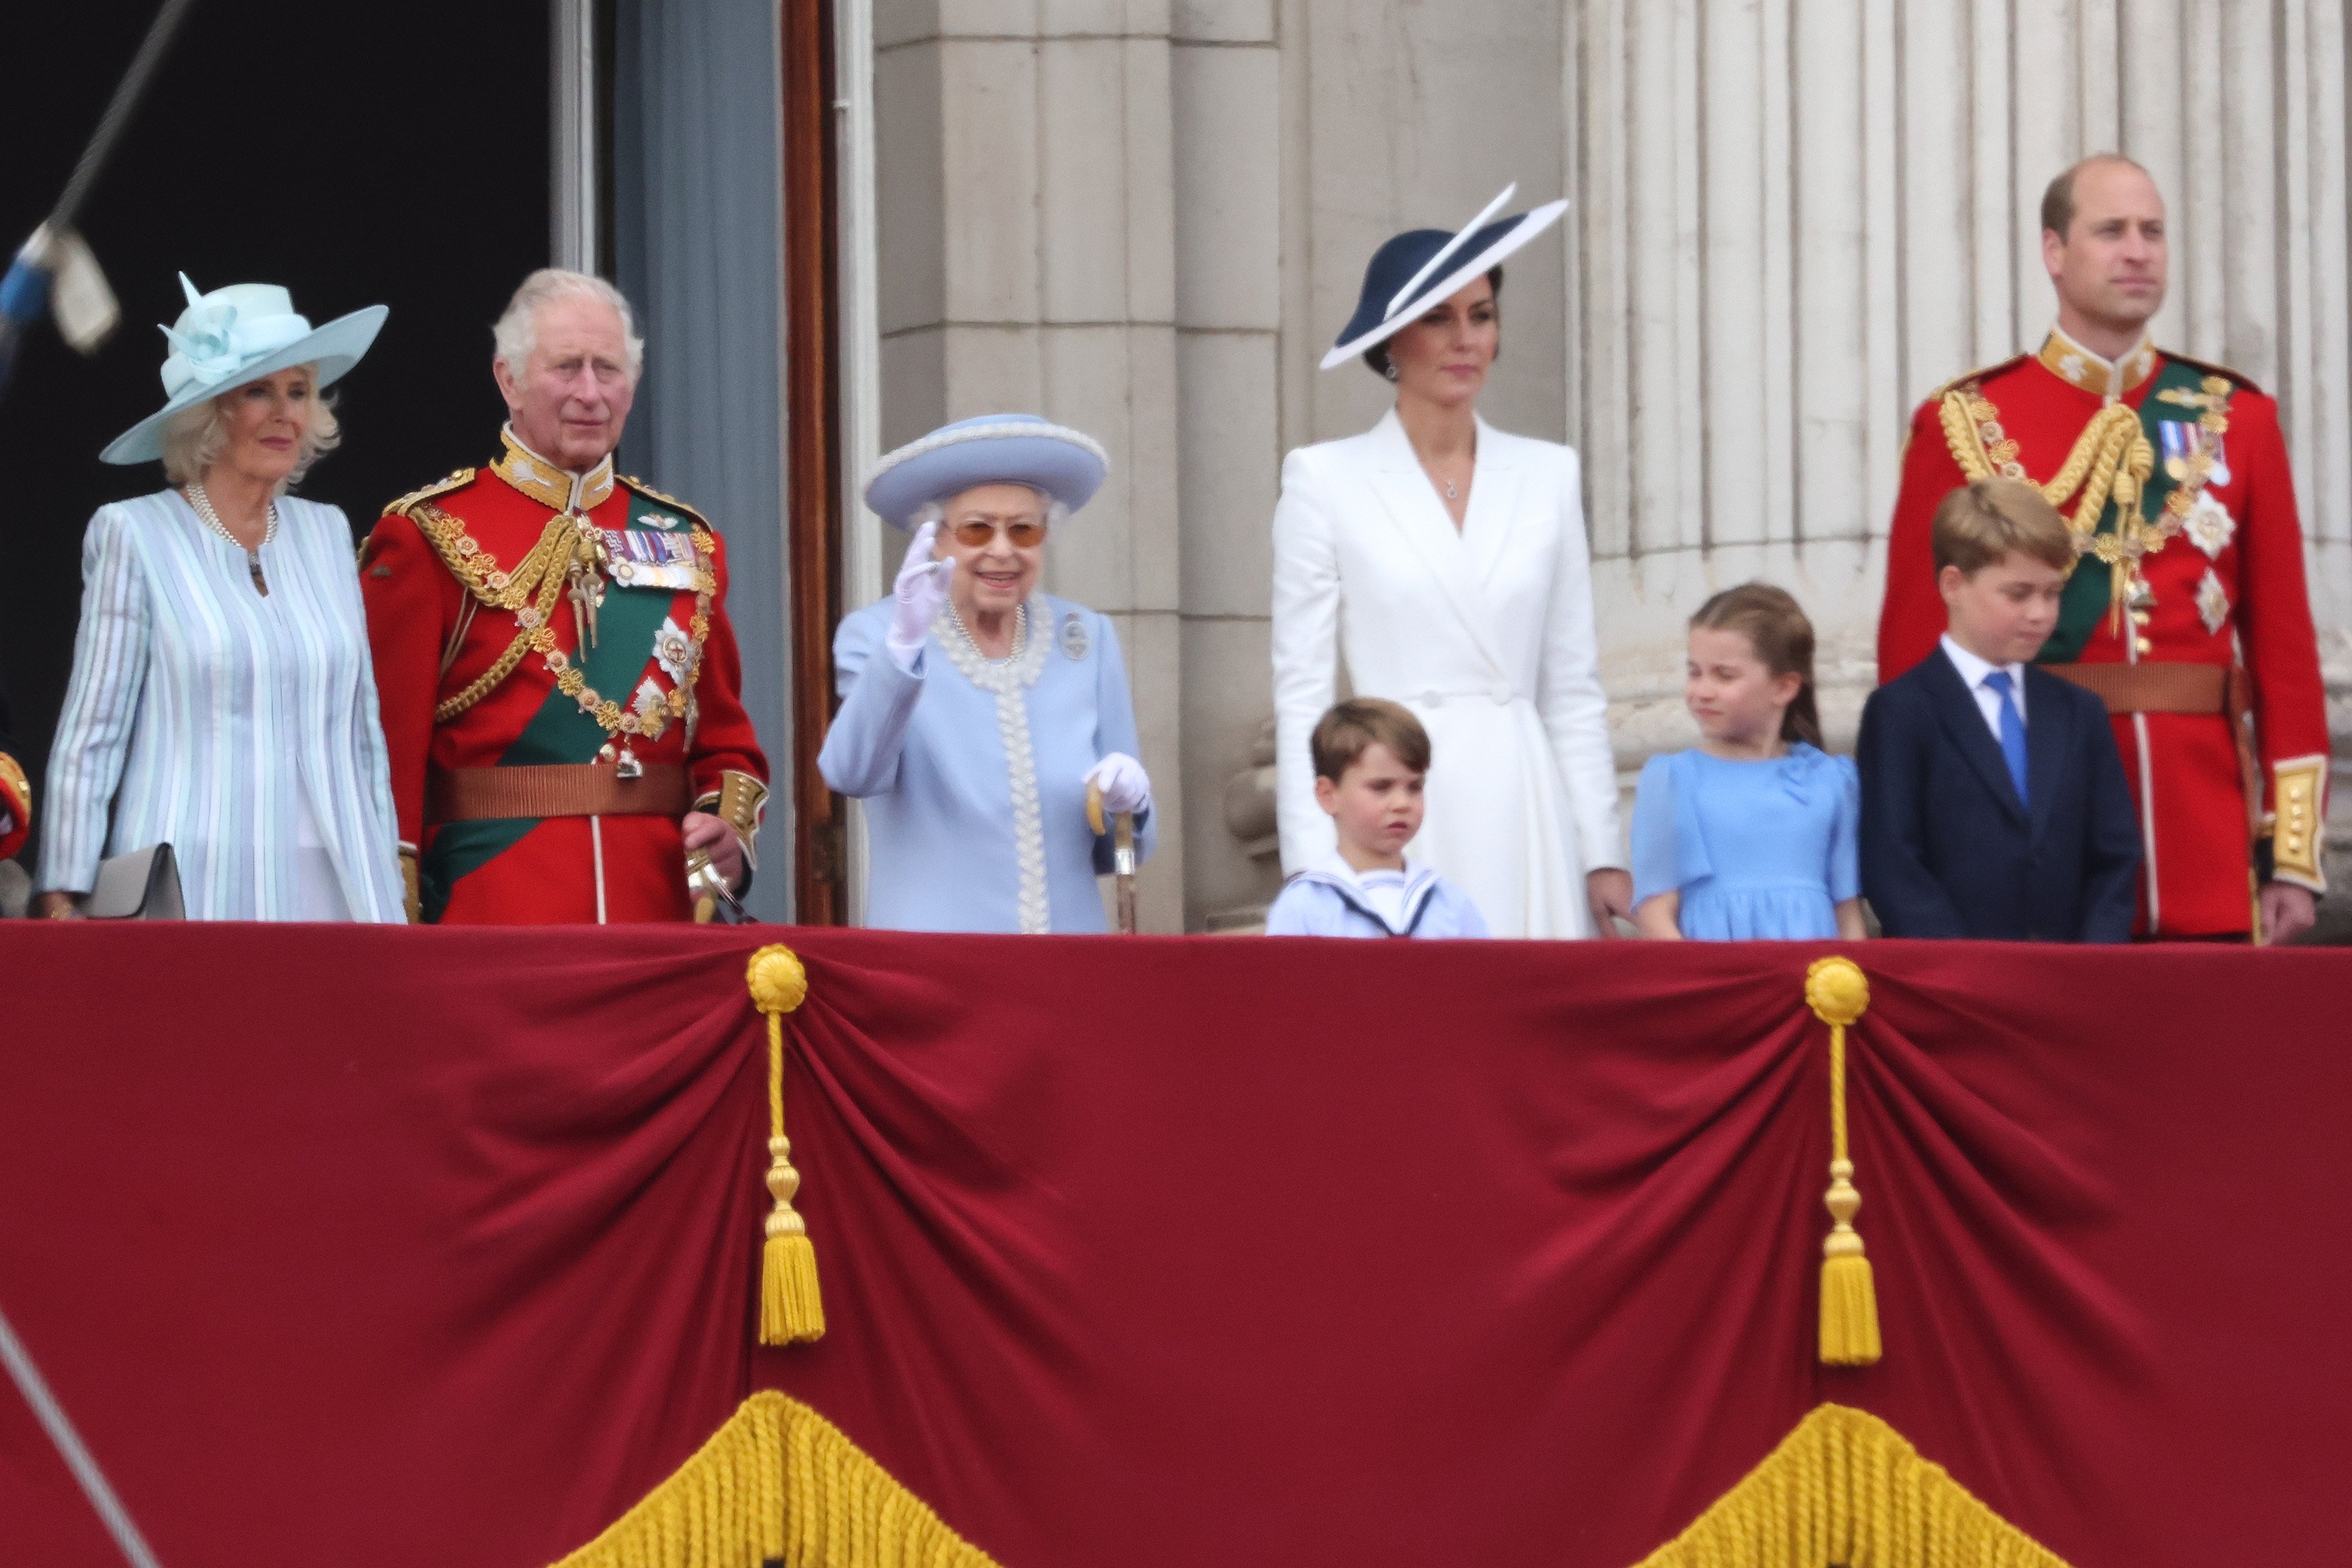 Königingemahlin Camilla, König Charles III., Königin Elizabeth II., Prinz William, Kate Middleton mit ihren Kindern George, Charlotte und Louis im Buckingham Palace im Jahr 2022. | Quelle: Getty Images 